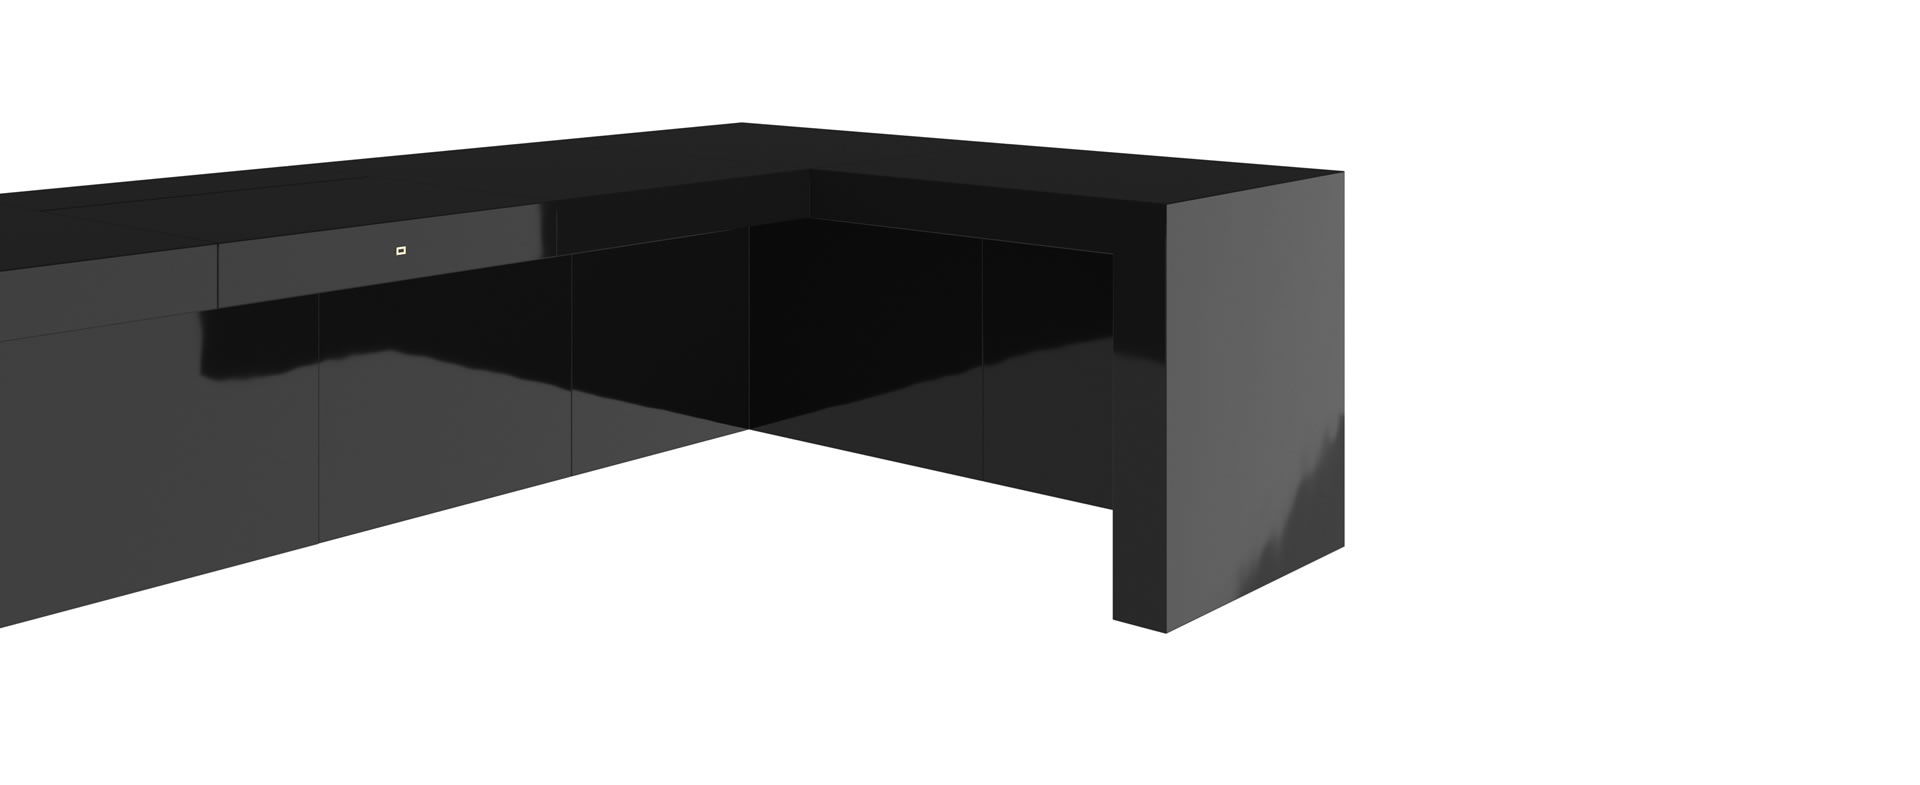 FELIX SCHWAKE DESK III piano lacquer black modern corner desk closed cube elemente